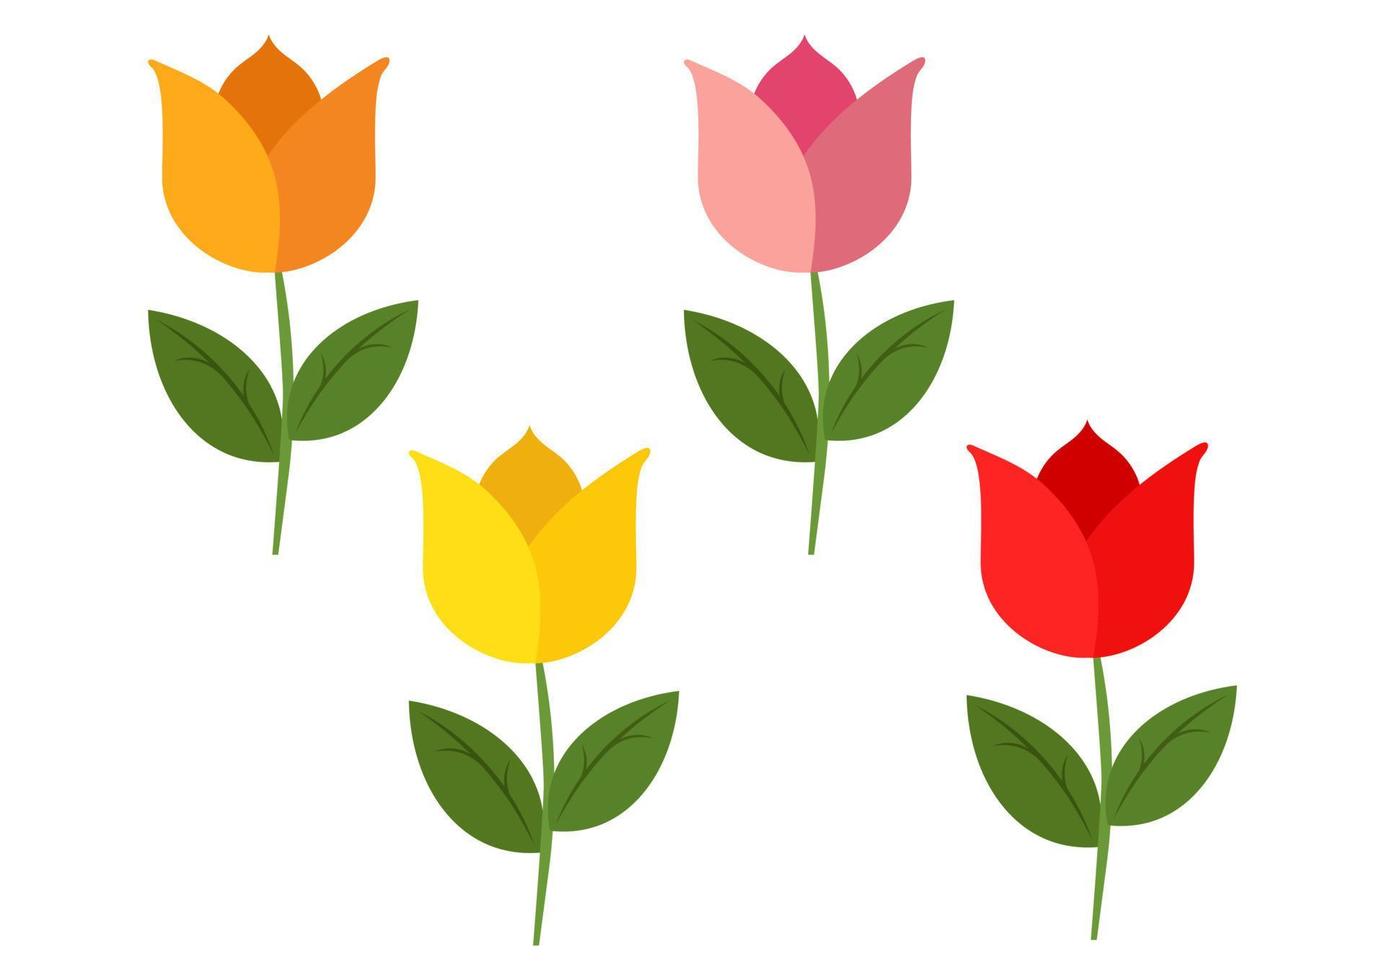 fyra tulpaner i olika färger isolerade på en vit bakgrund. vektor illustration av fyra färgade tulpaner